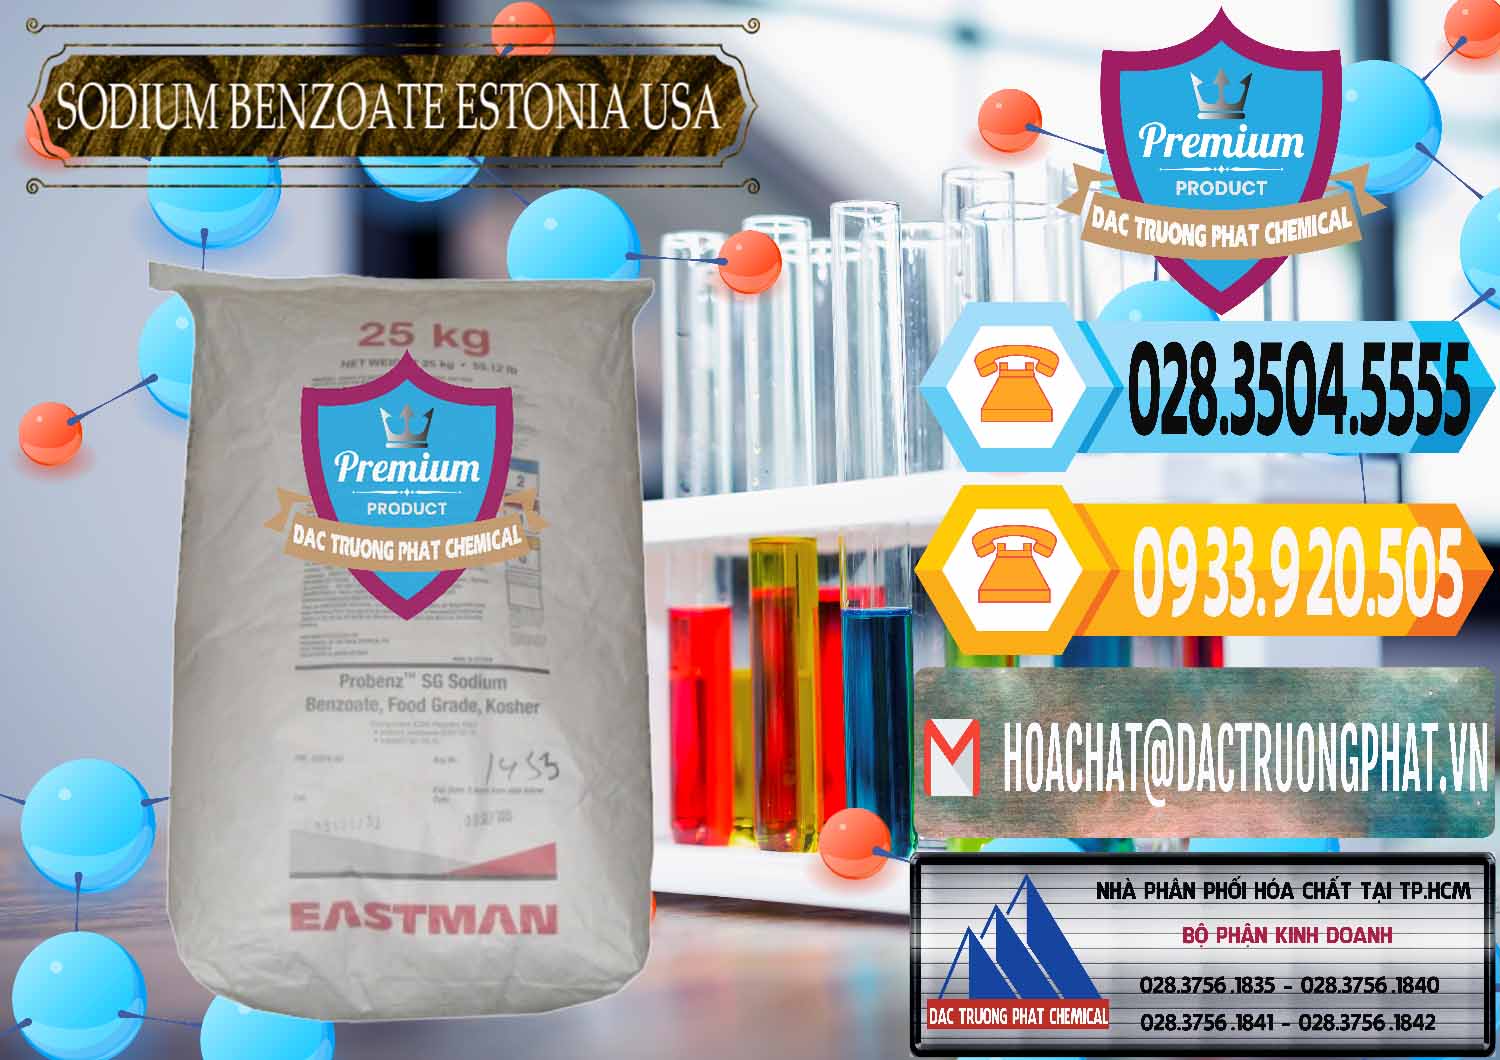 Bán - cung ứng Sodium Benzoate - Mốc Bột Estonia Mỹ USA - 0468 - Chuyên nhập khẩu - phân phối hóa chất tại TP.HCM - hoachattayrua.net